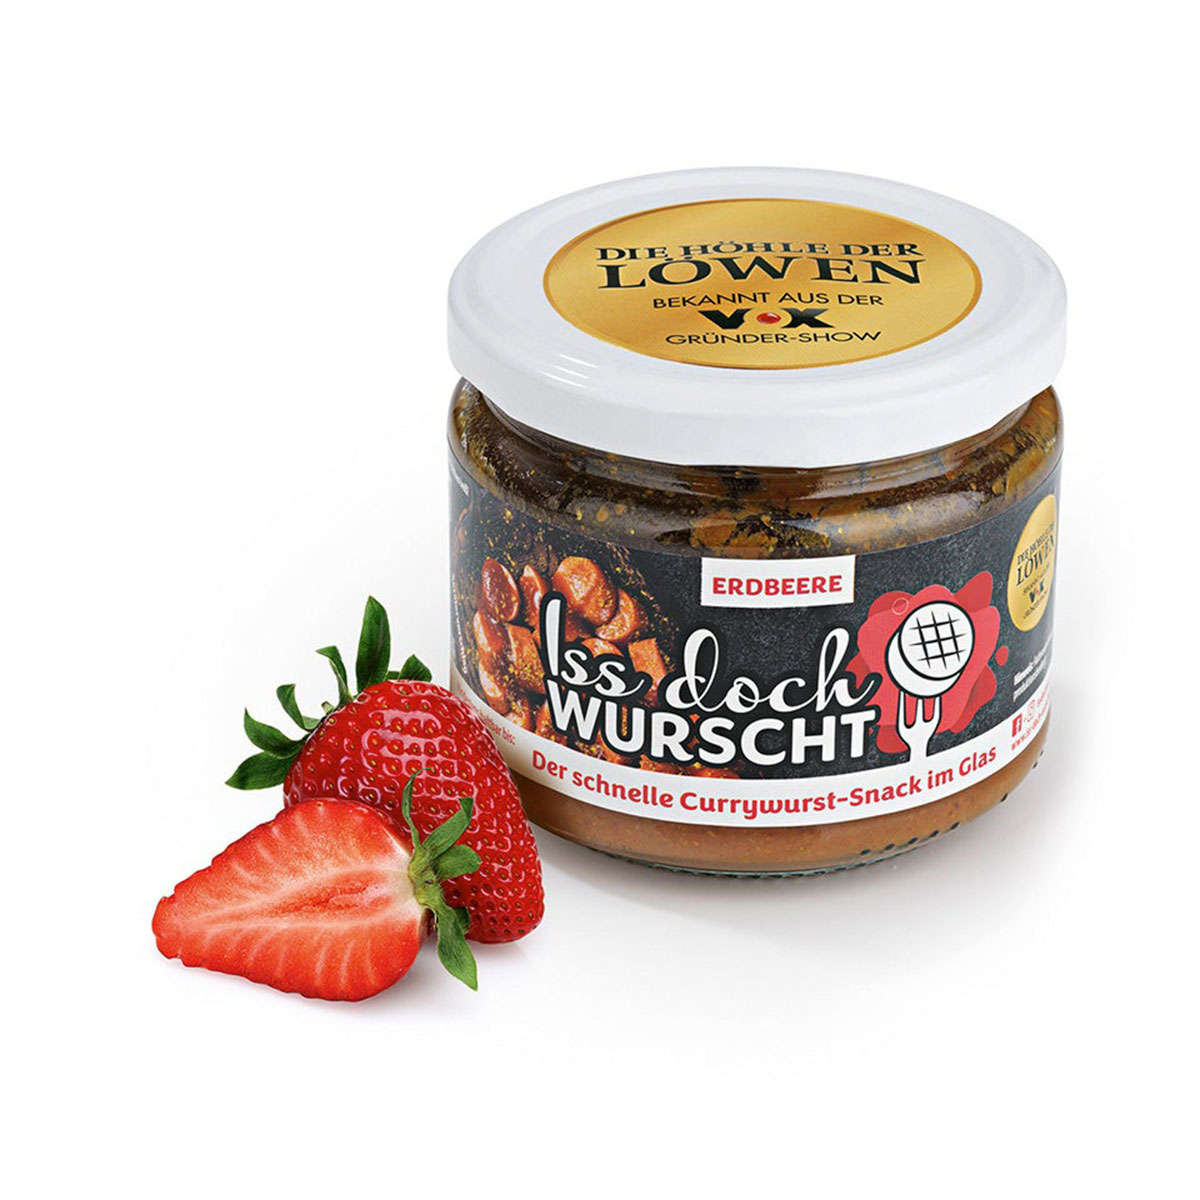 Currywurst-Snack Erdbeere - Iss Doch Wurscht, 250g